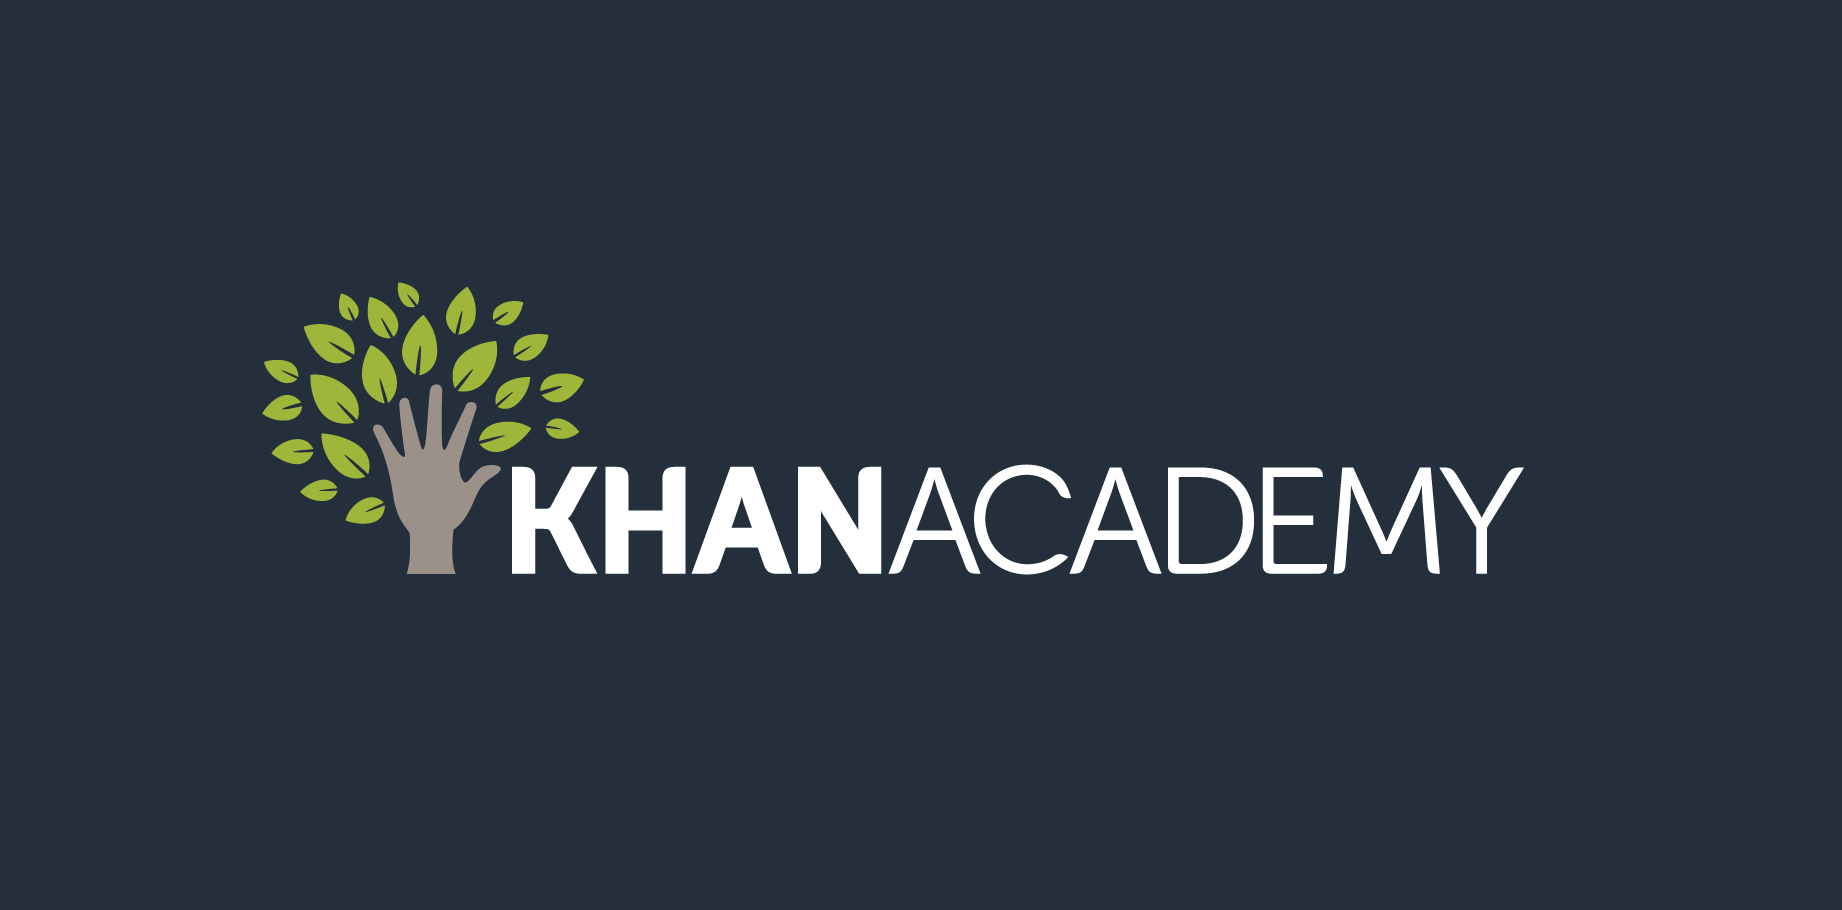 تسعي أكاديمية خان في تقديم محتوي متخصص من الدورات التدريبية لجميع الطلاب حول العالم باختلاف بلادهم أو مستويات تعليمهم. (مواقع التواصل الإجتماعي)